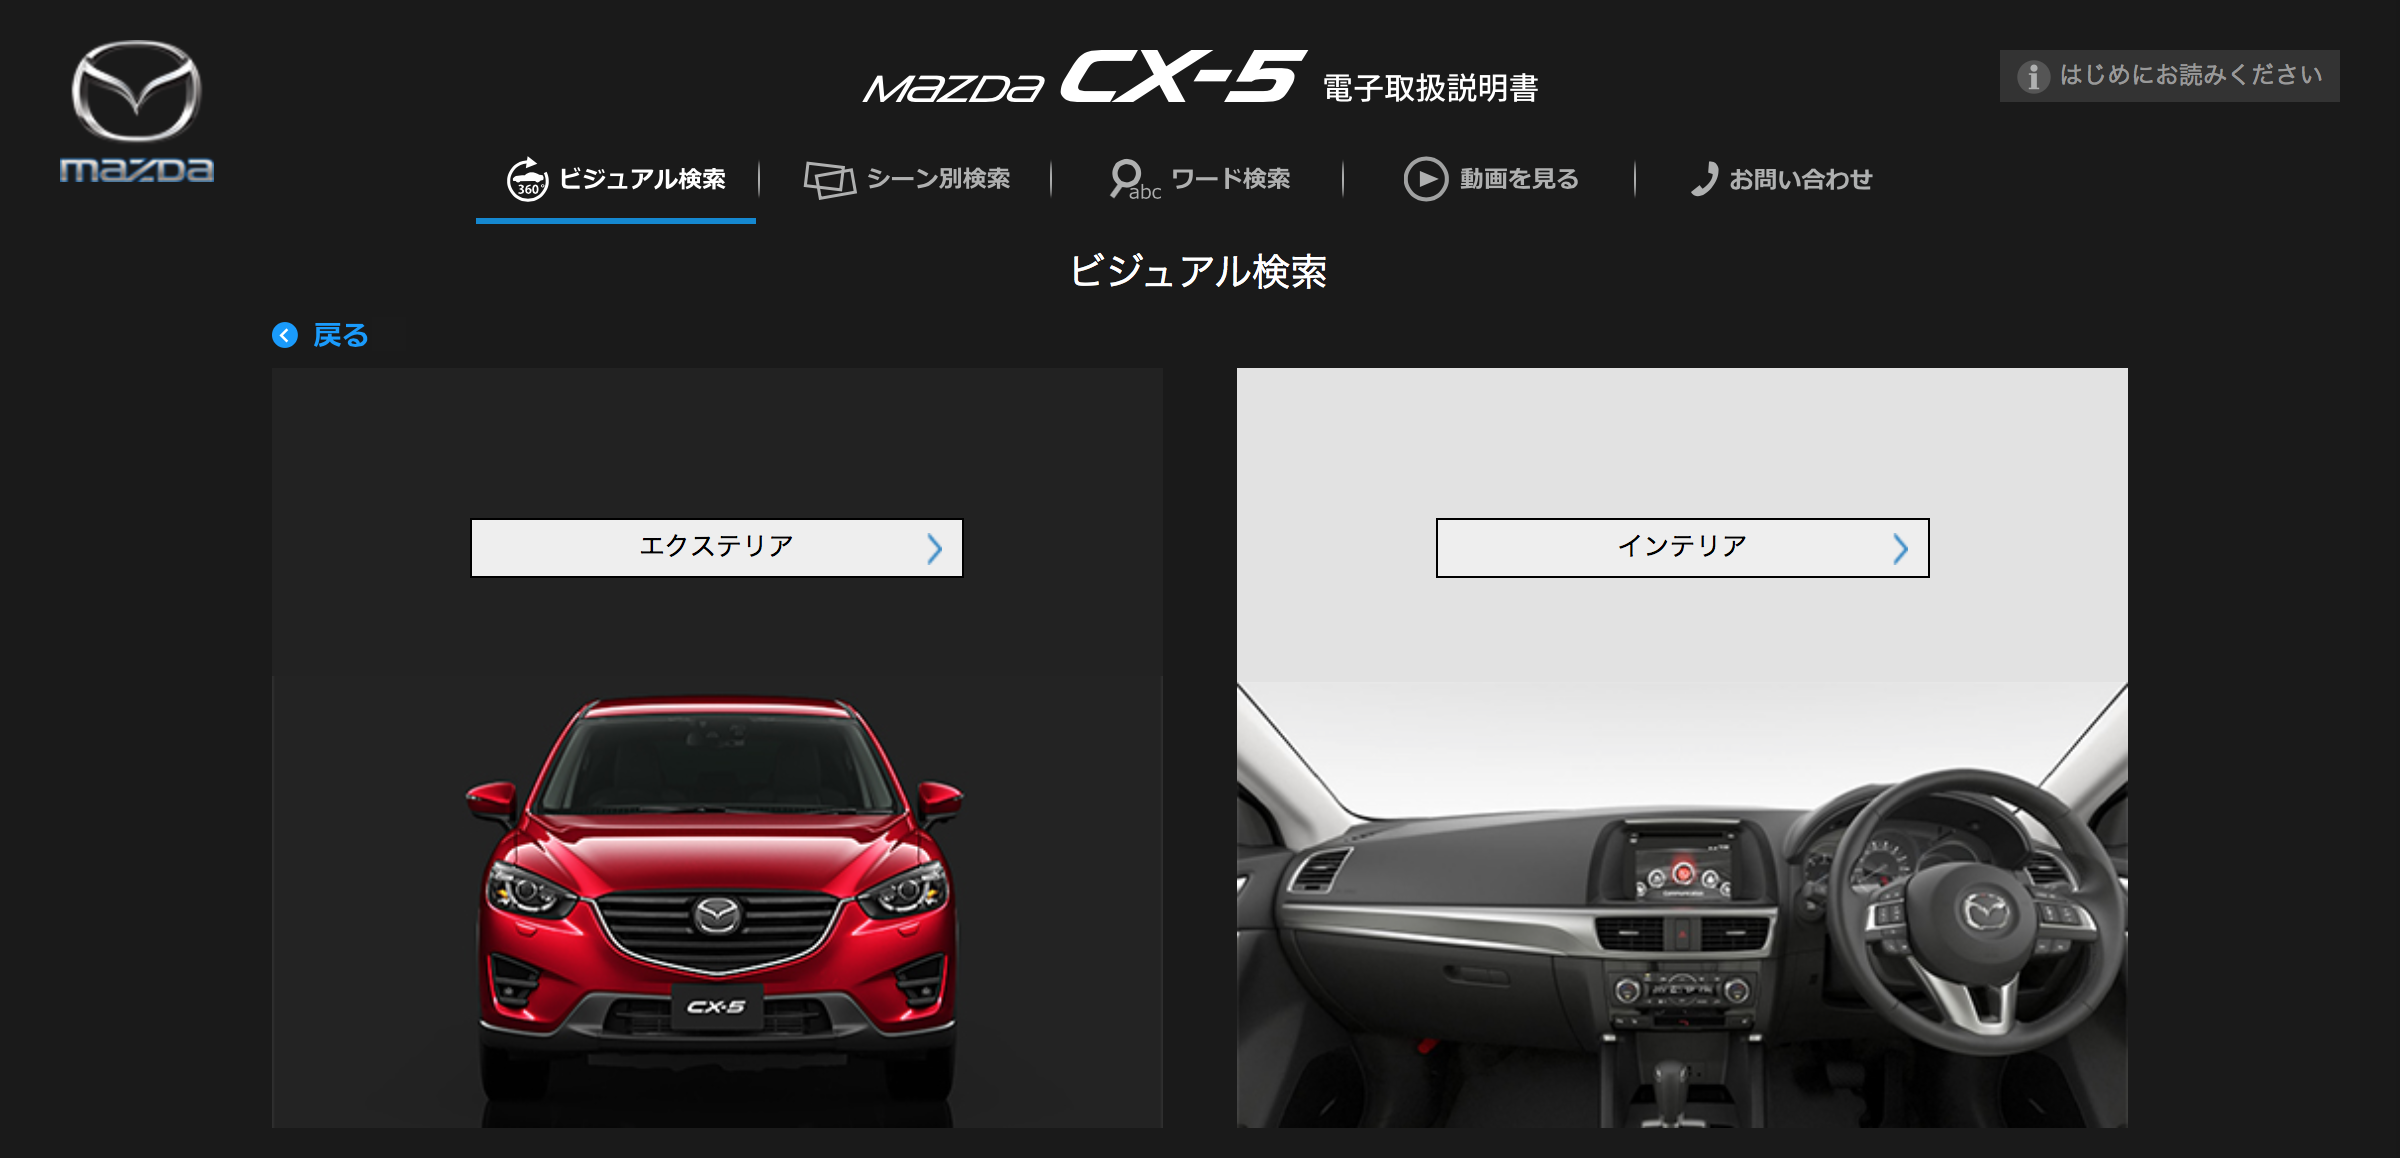 Mazda Cx 5 電子取扱説明書 Ke